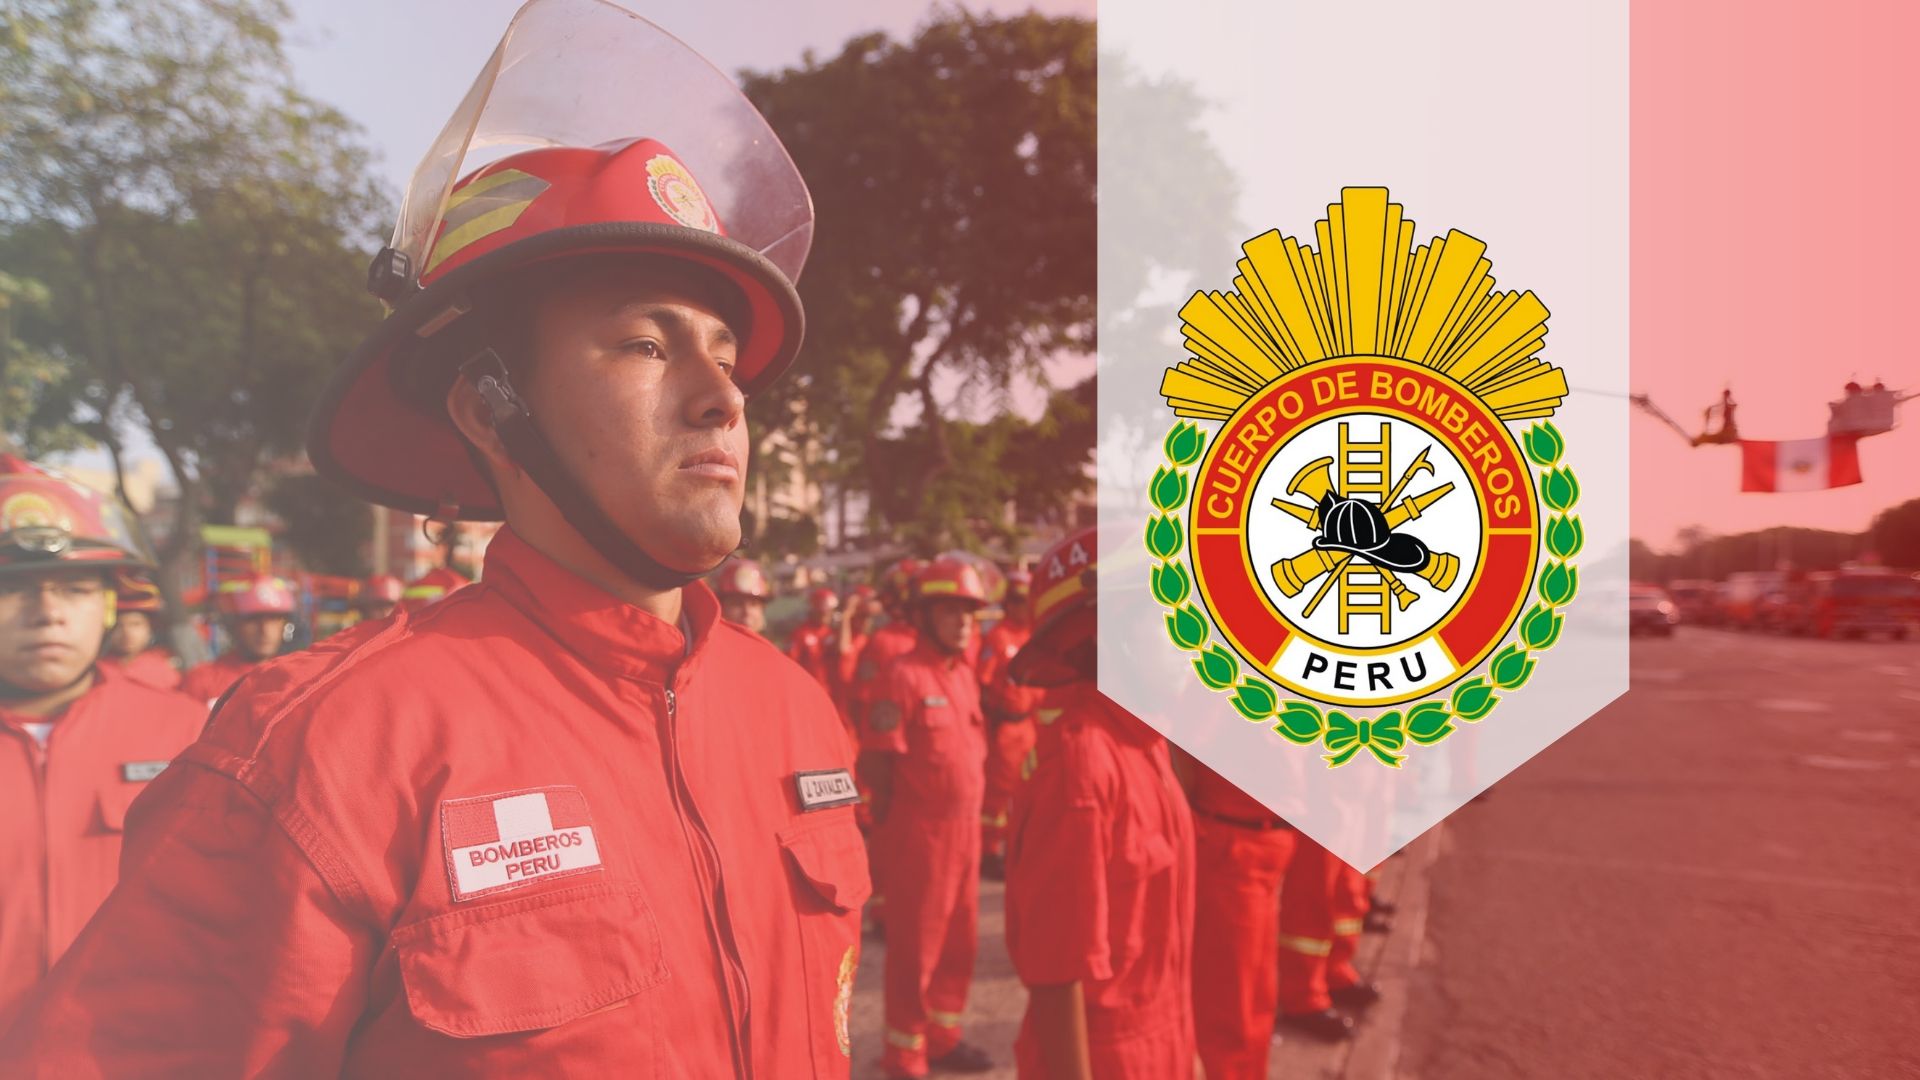 Qué es el Cuerpo de Bomberos del Perú